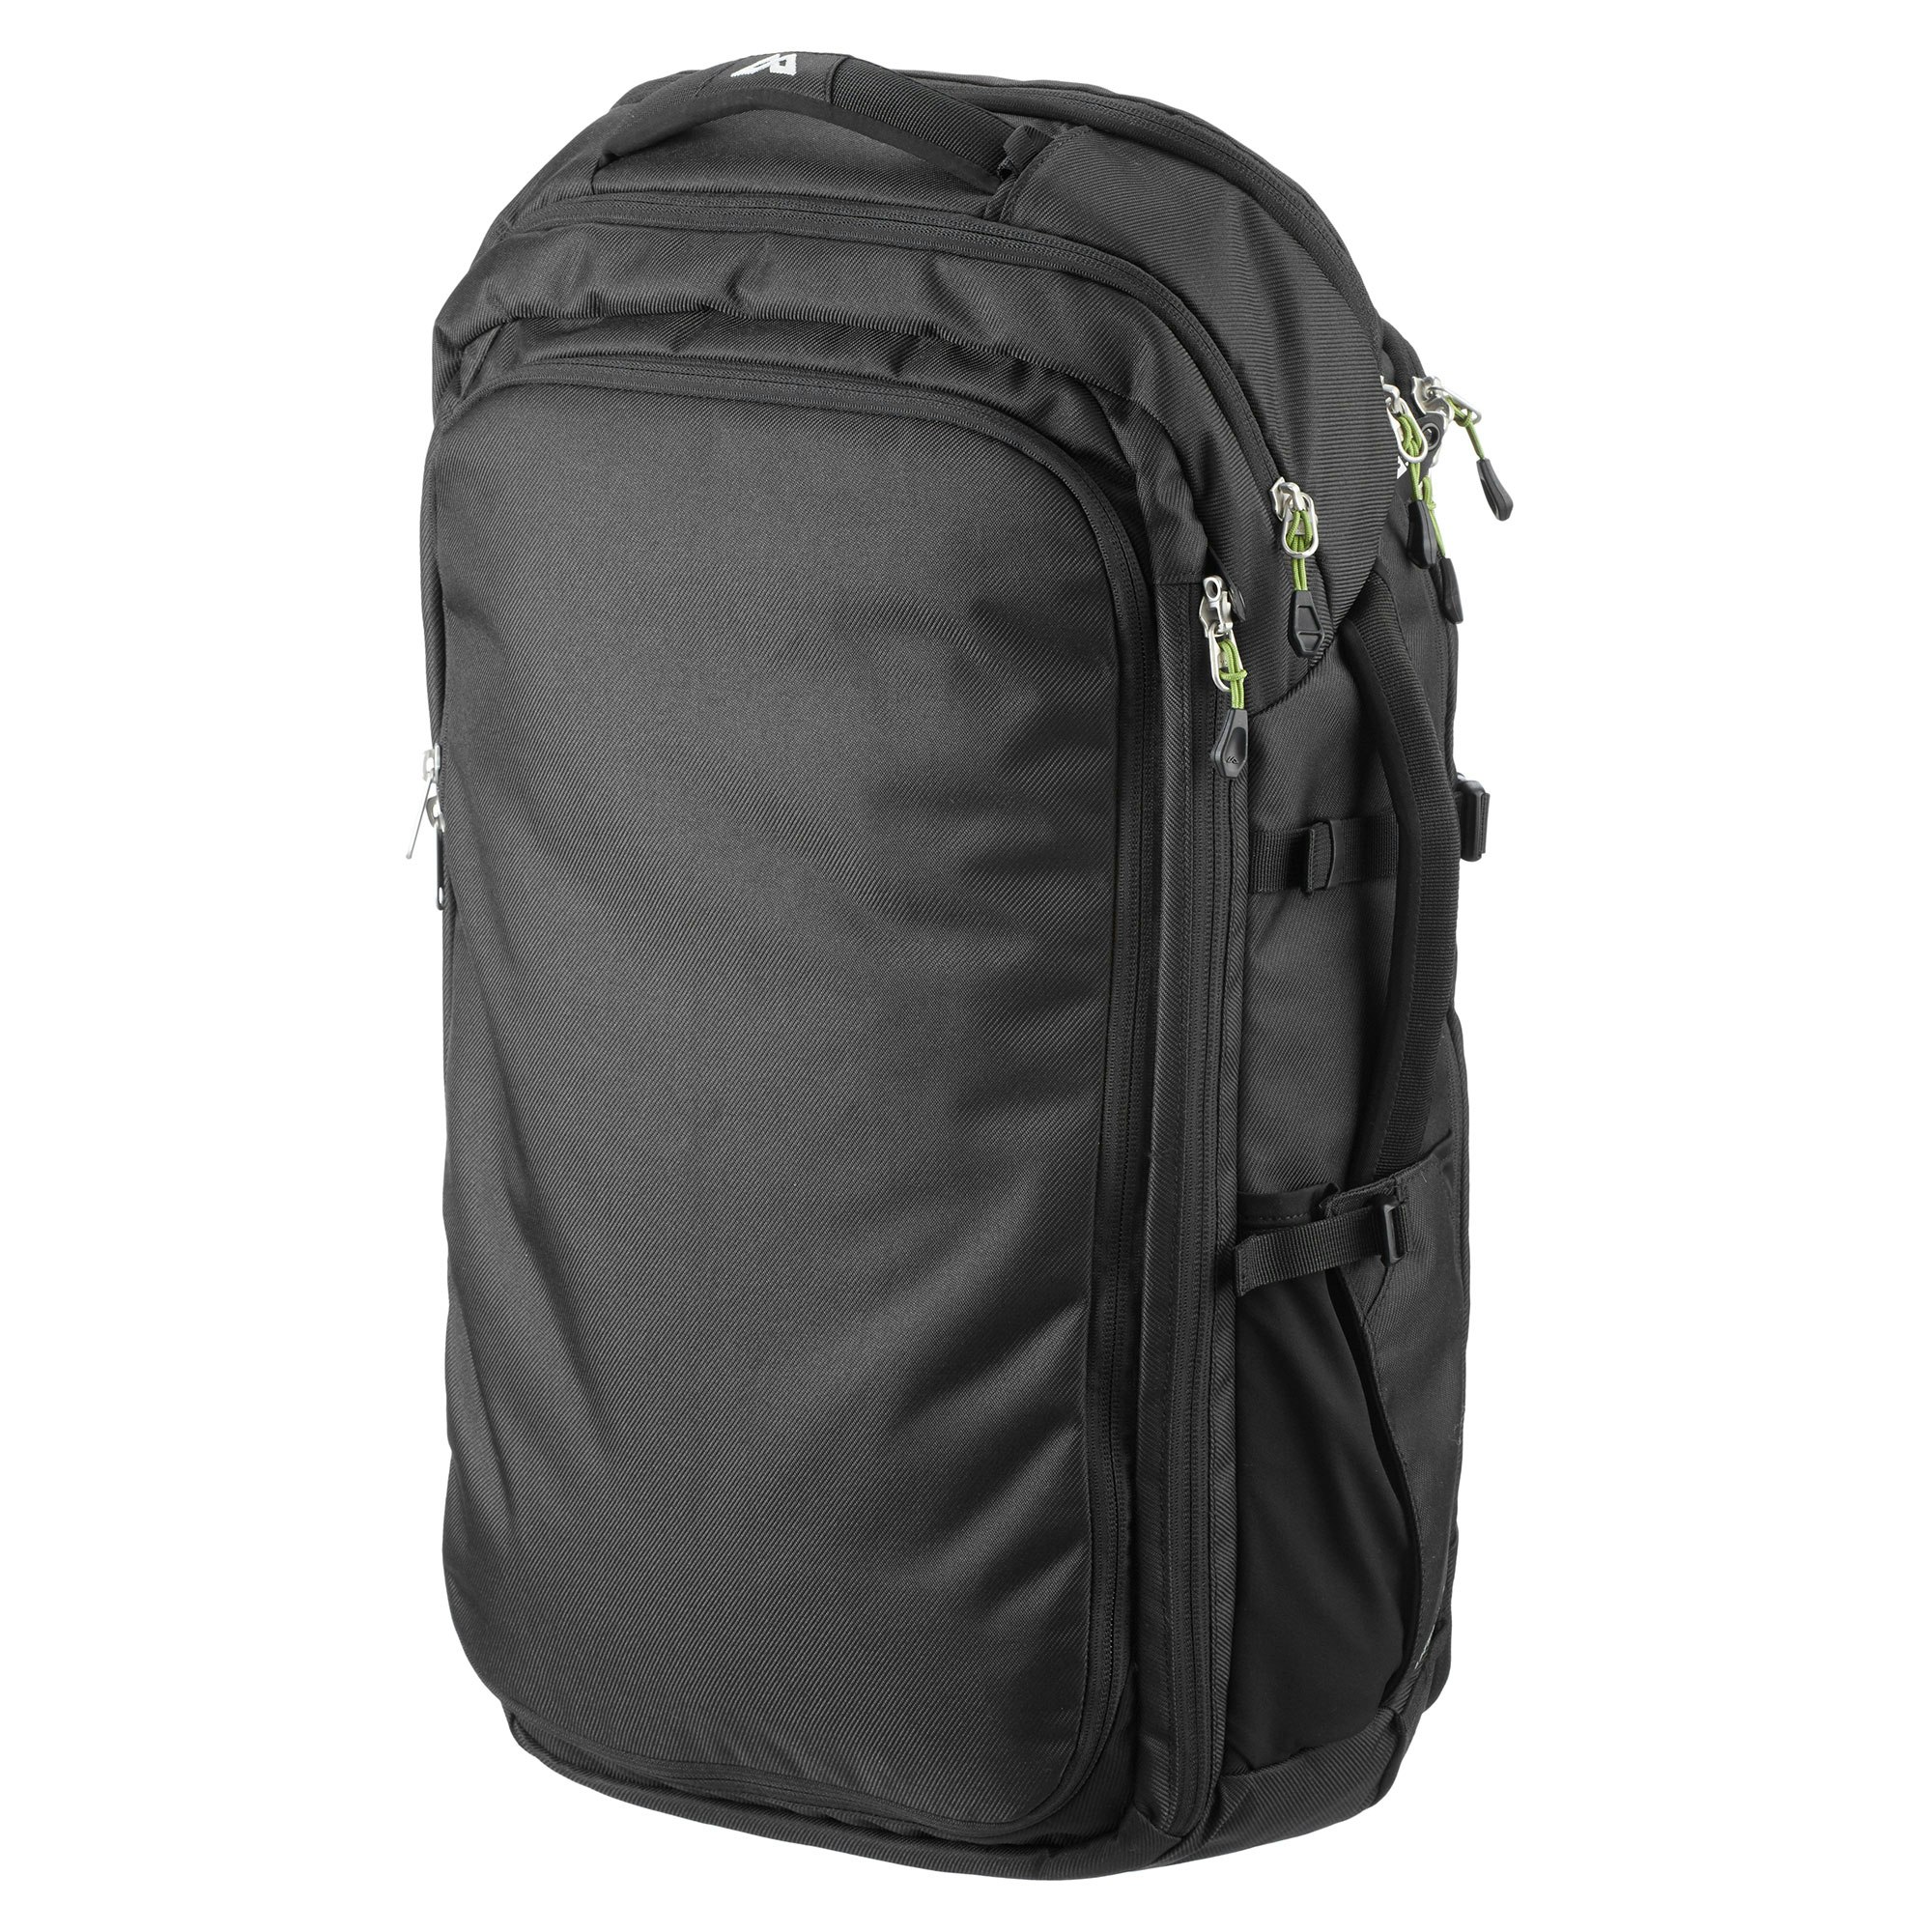 Kathmandu Litehaul 38L Carry-On Cabin Sized Travel Pack Shoulder Bag Backpack | eBay